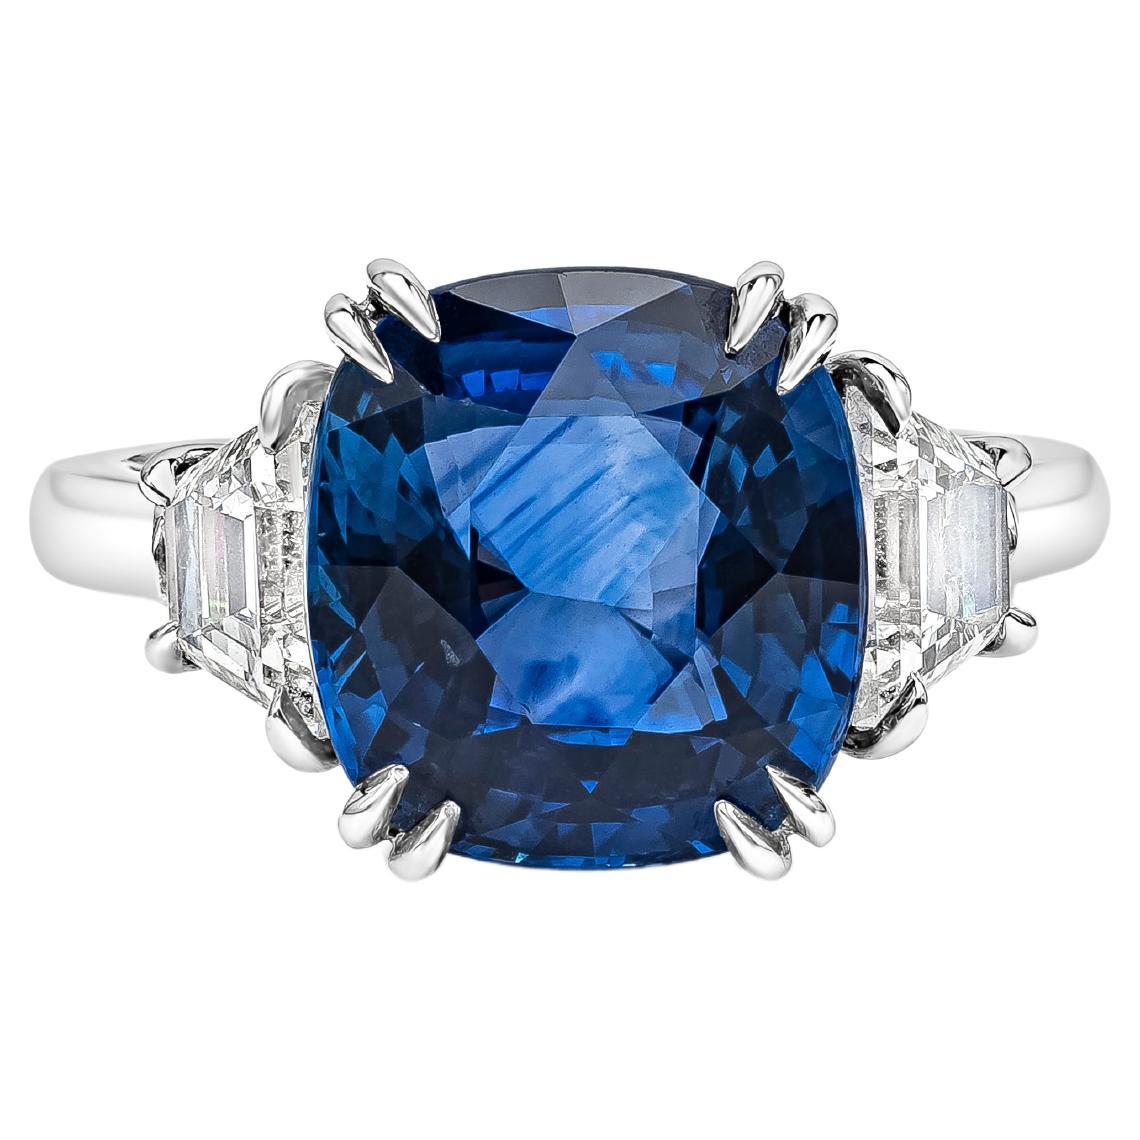 Verlobungsring mit 6,10 Karat blauem Saphir im Kissenschliff mit Diamanten und drei Steinen